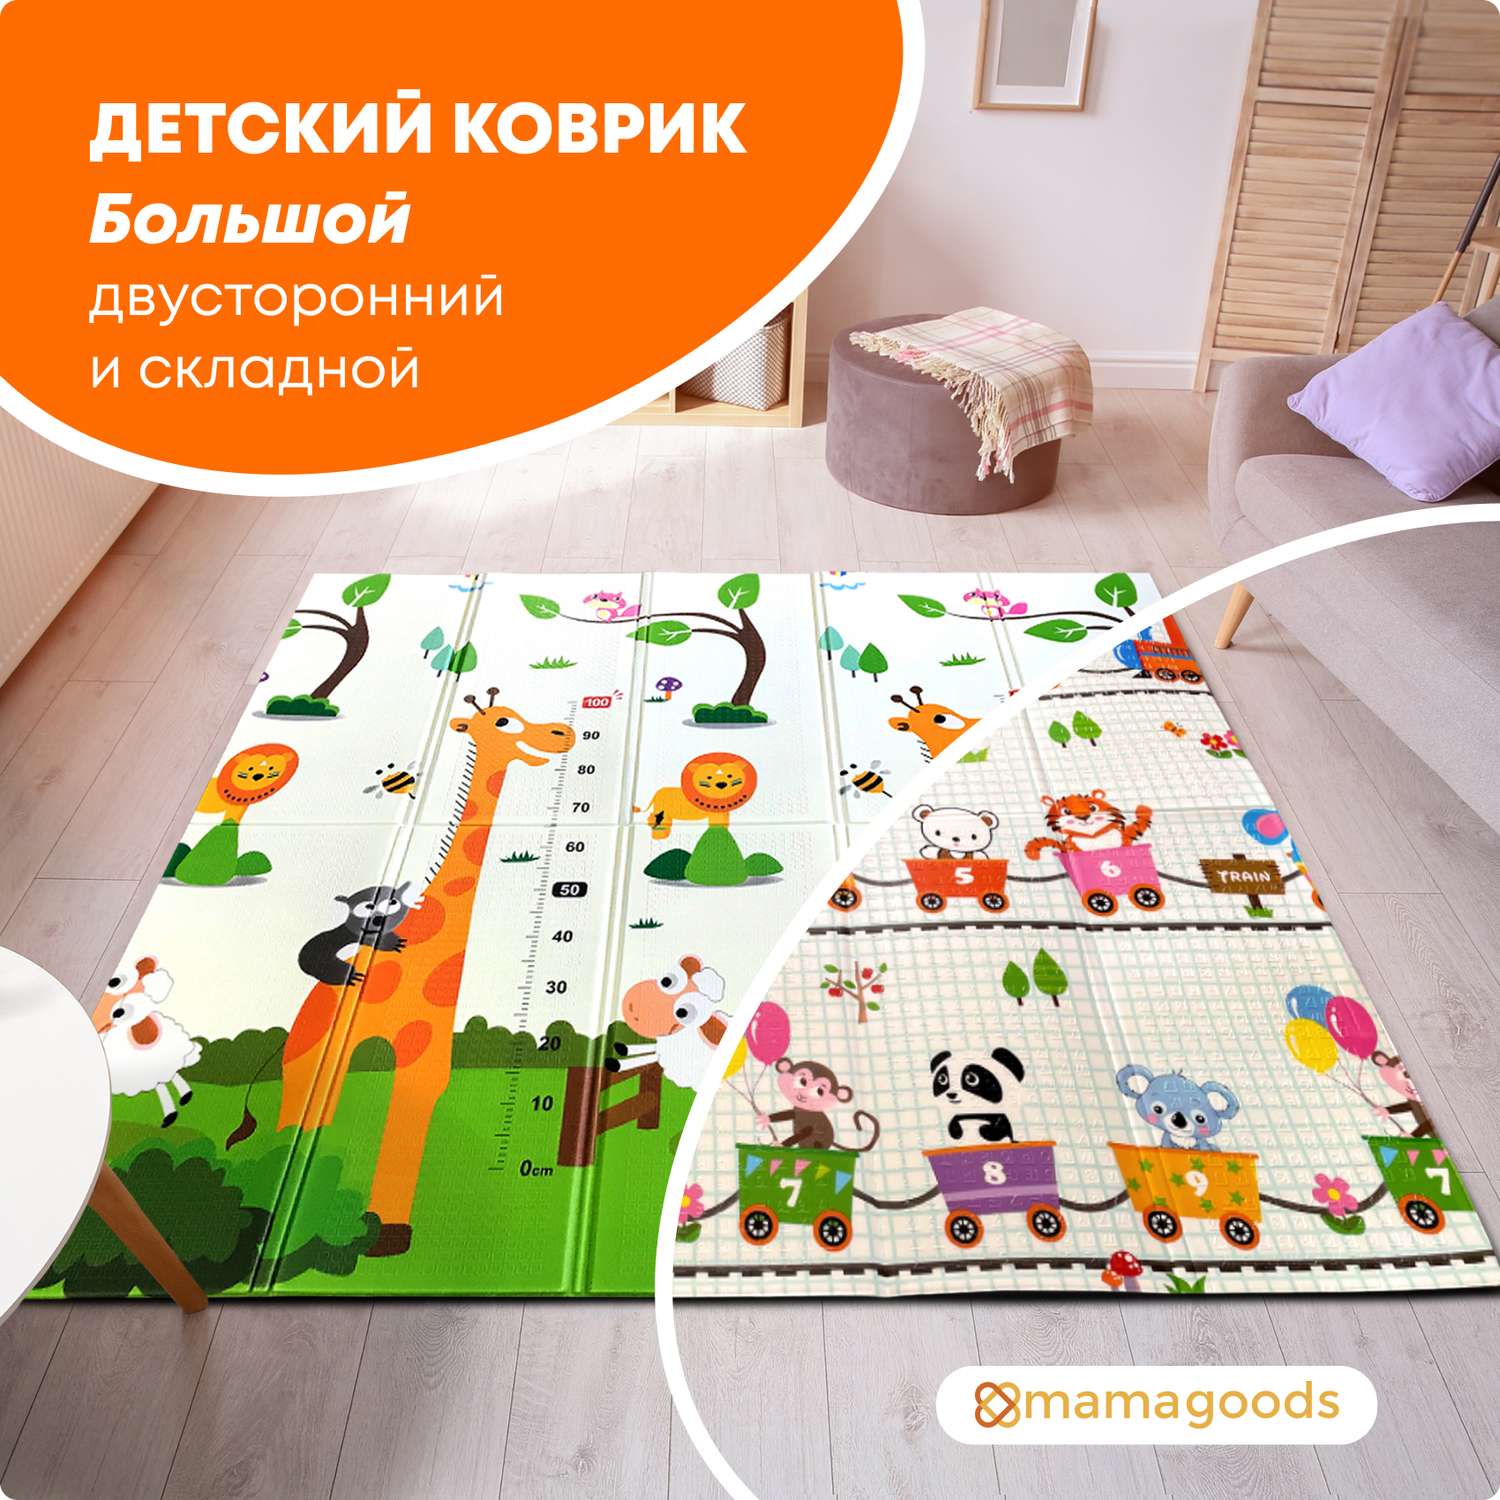 Развивающий коврик детский Mamagoods для ползания складной игровой 150х200 см Поезд и Жирафы - фото 1